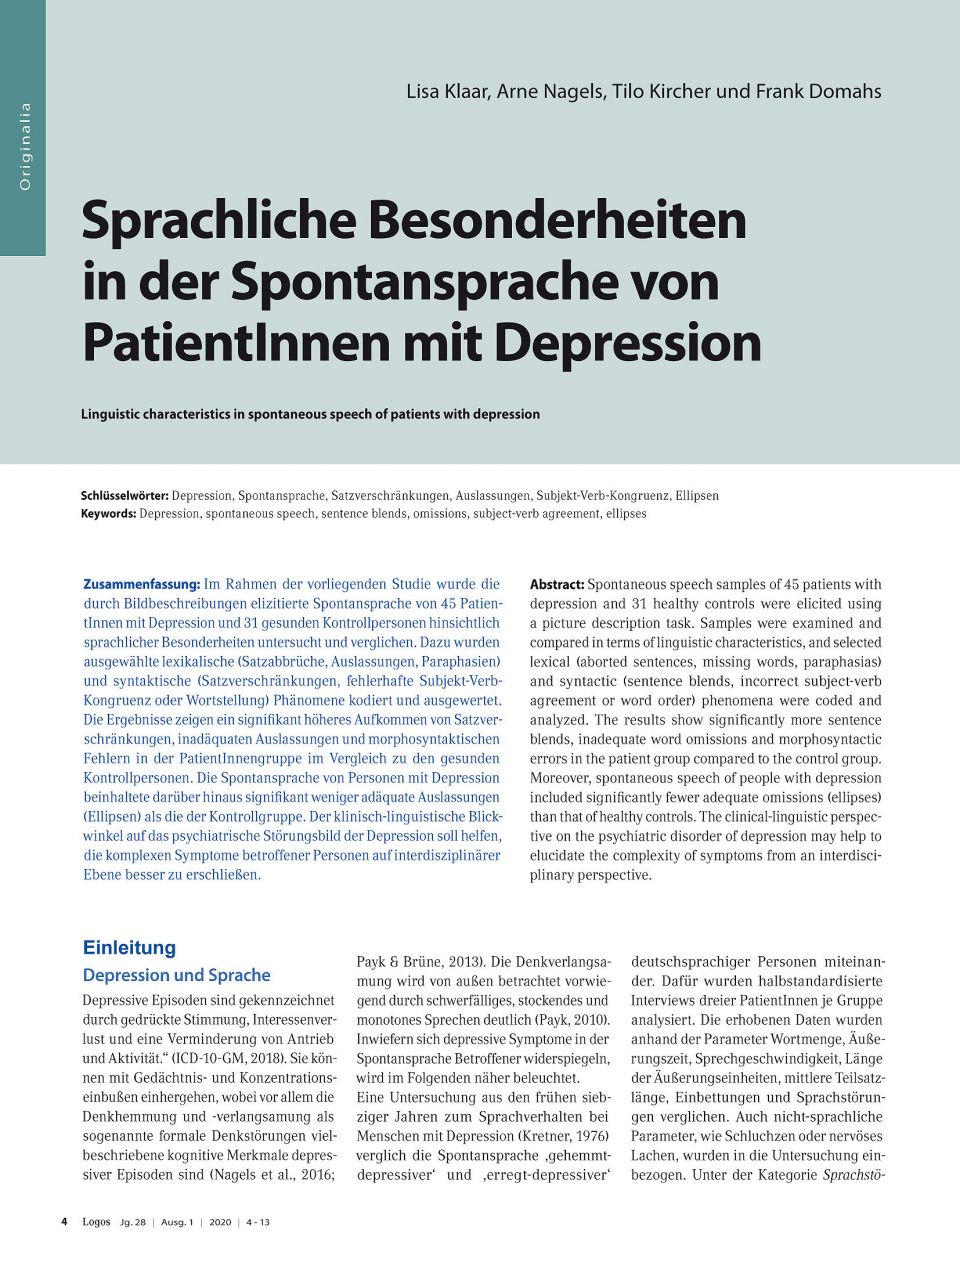 Sprachliche Besonderheiten in der Spontansprache von PatientInnen mit Depression